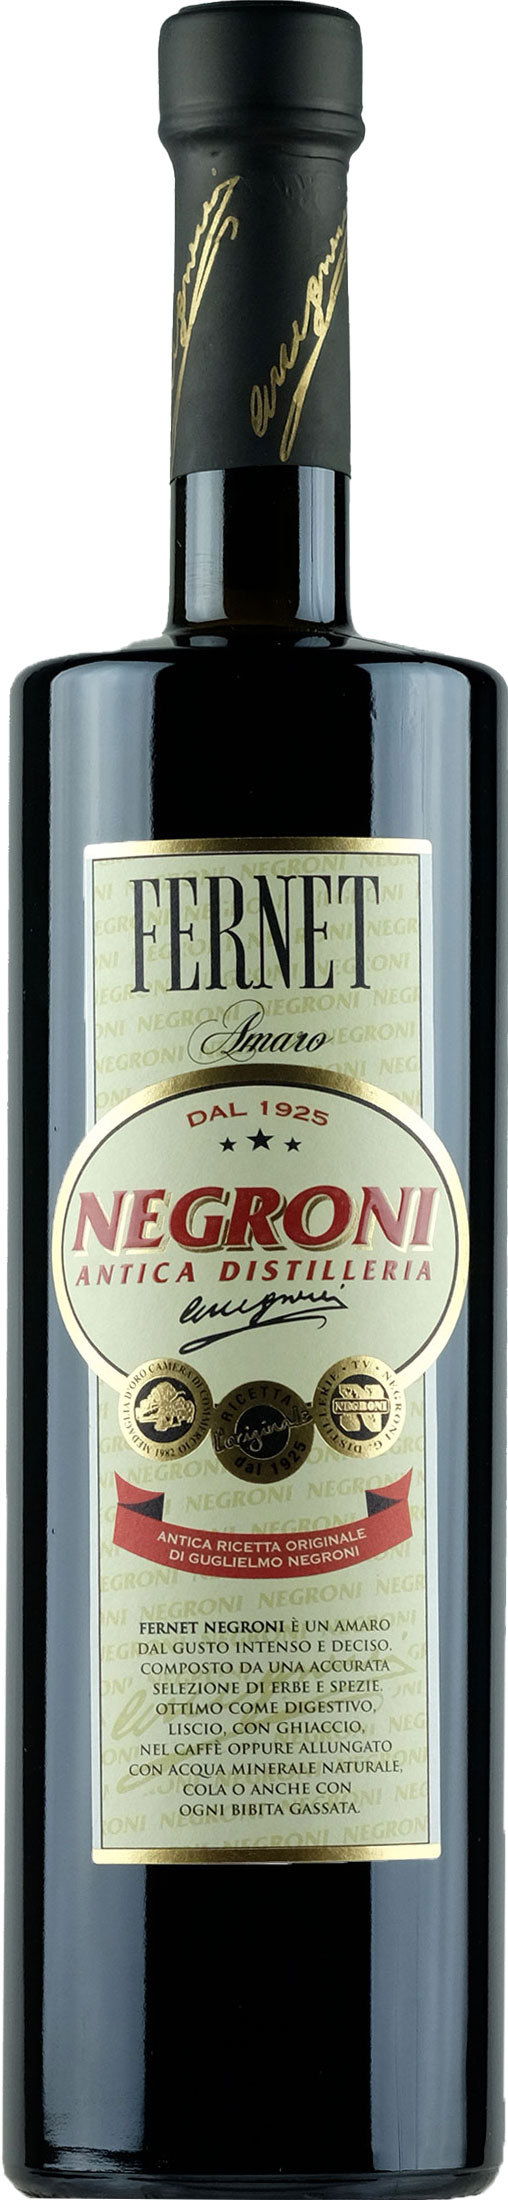 Negroni Antica Distilleria Fernet